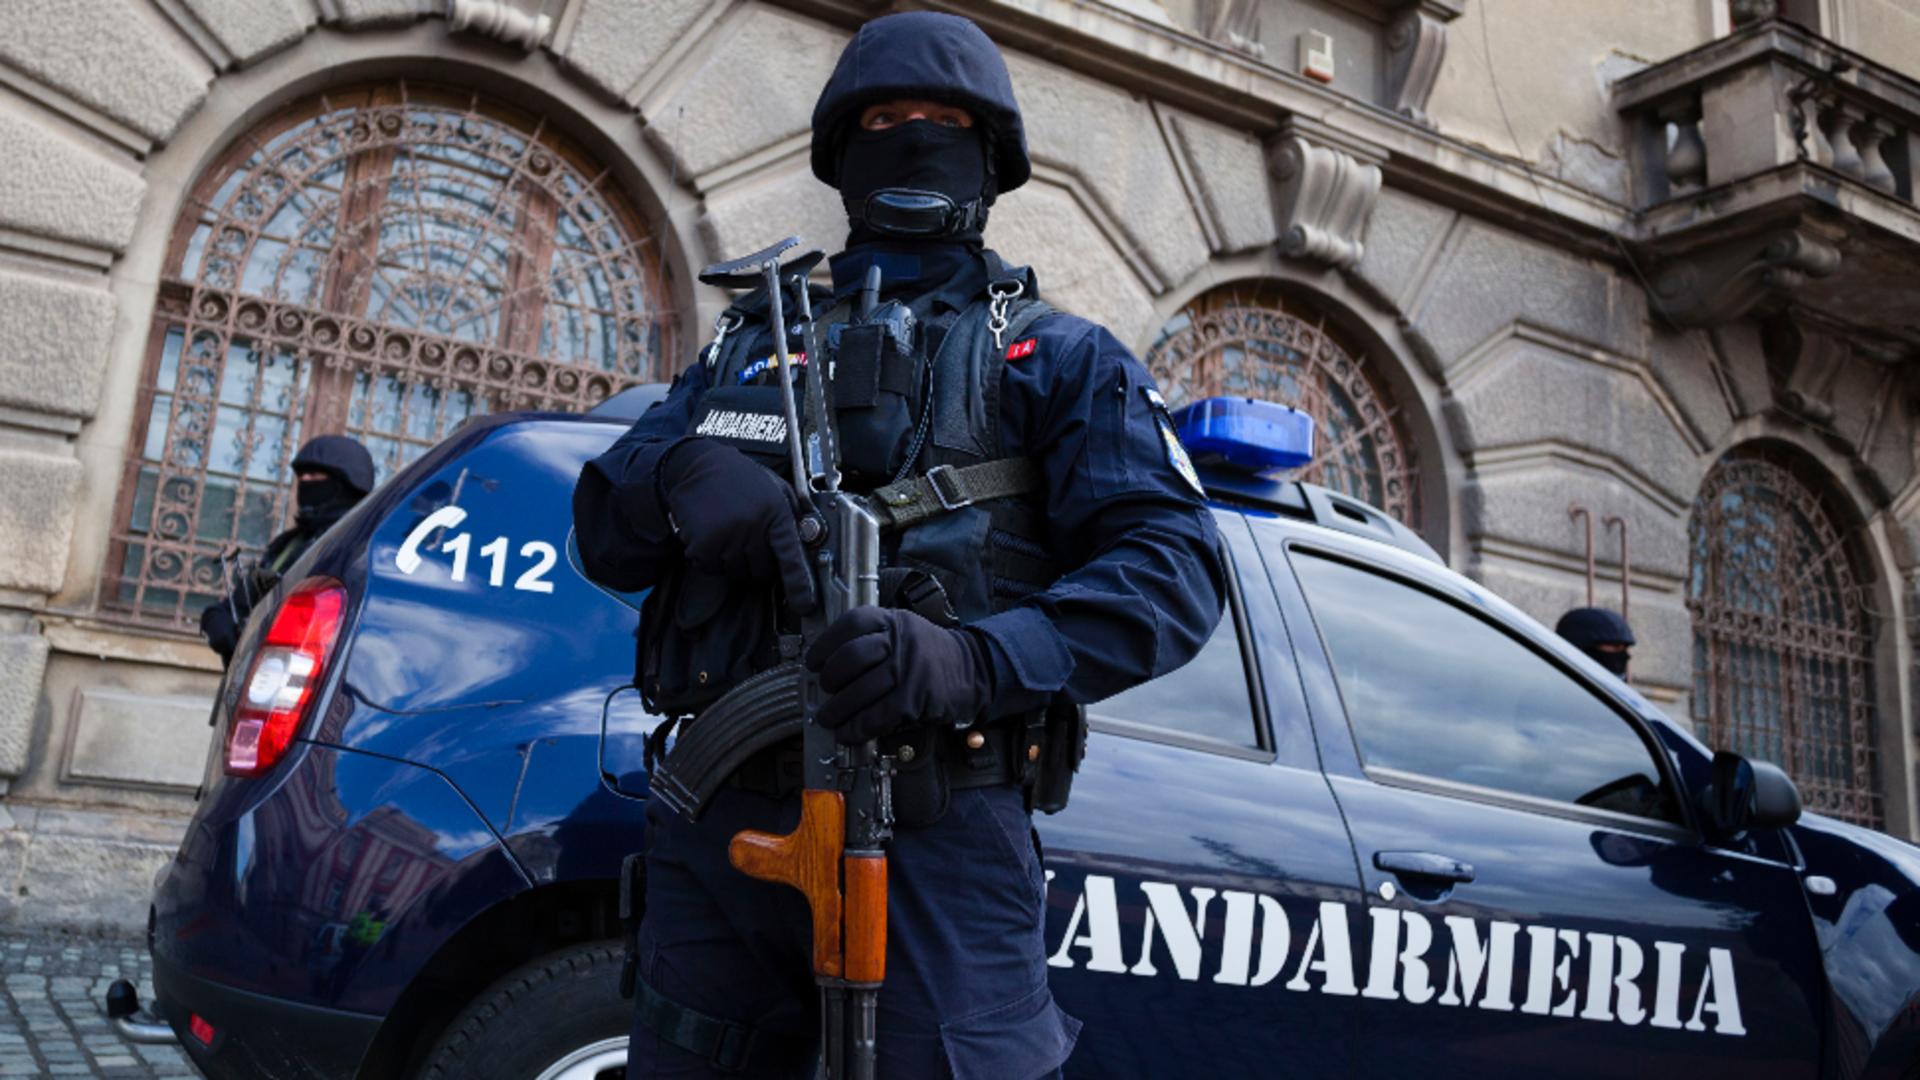 Șef din Jandarmerie, promovat după ce a condus băut / Foto: Arhivă Inquam Photos